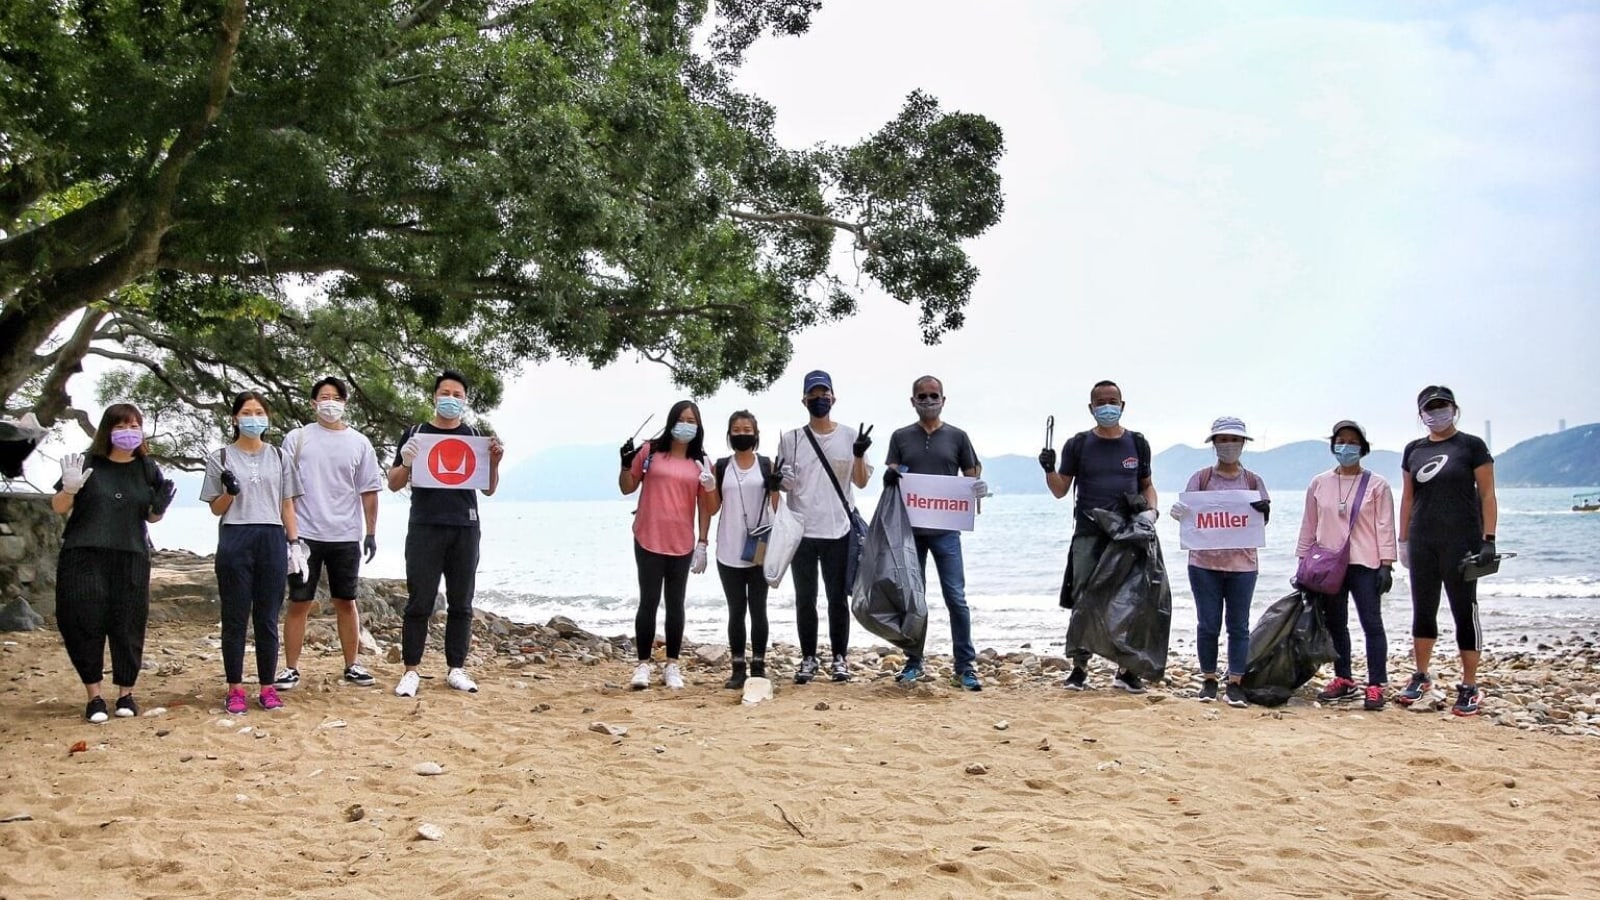 Doce personas paradas en una playa sosteniendo bolsas de residuos aparentemente llenas de basura recogida en el área.